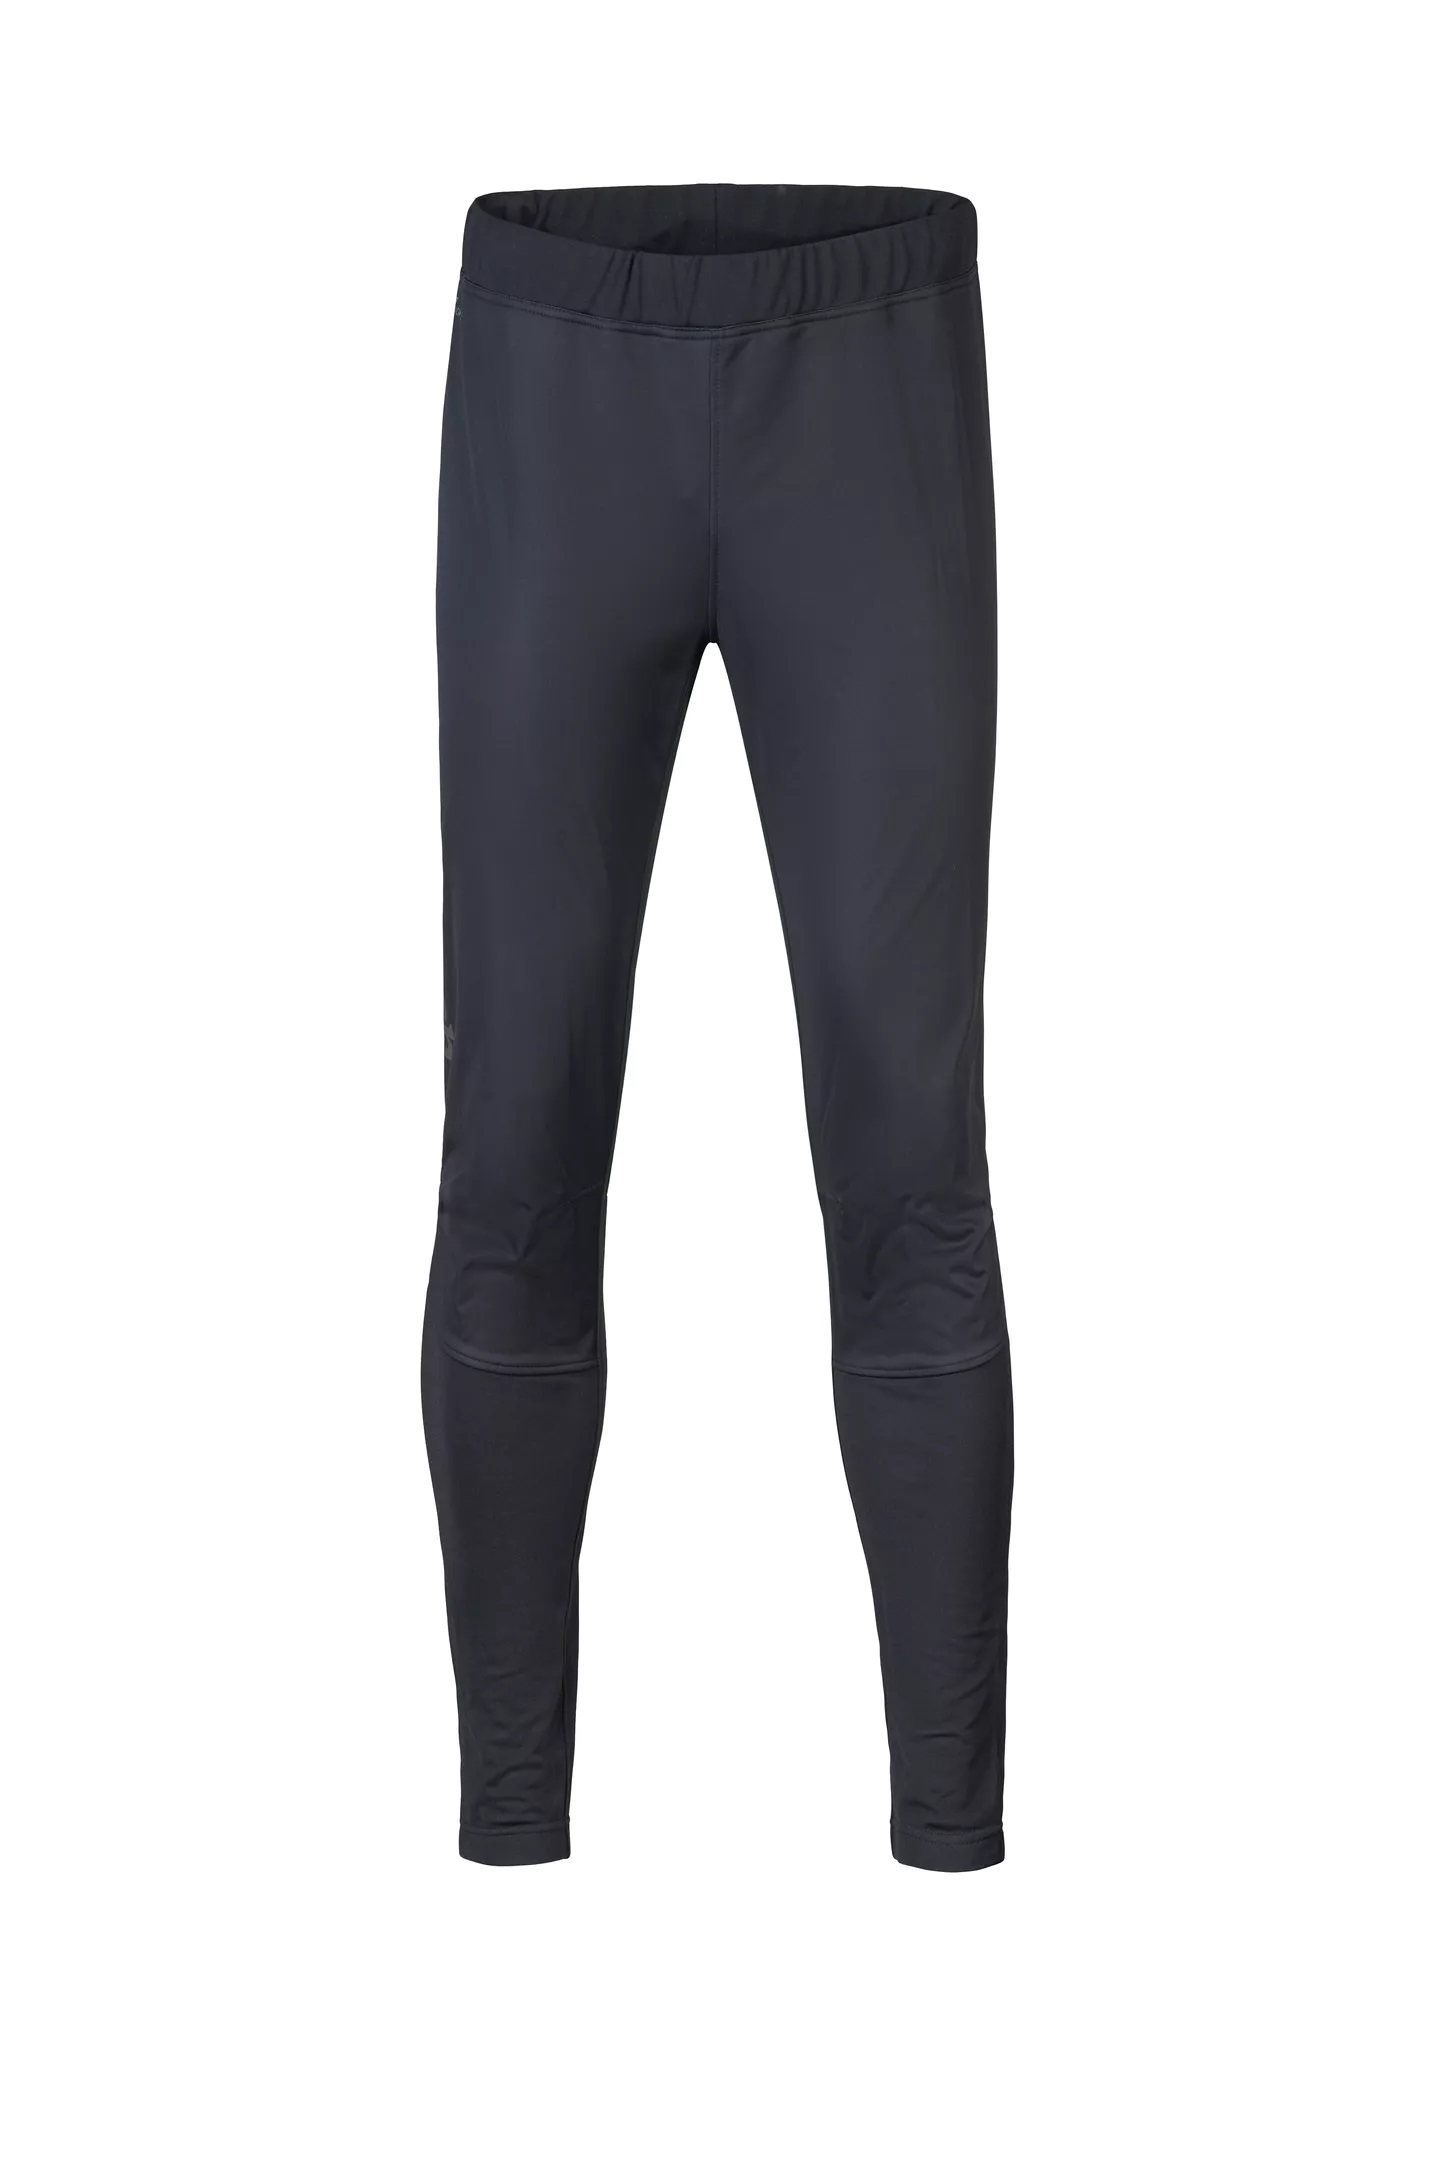 Pánské funkční kalhoty Hannah Nordic Pants Anthracite XL